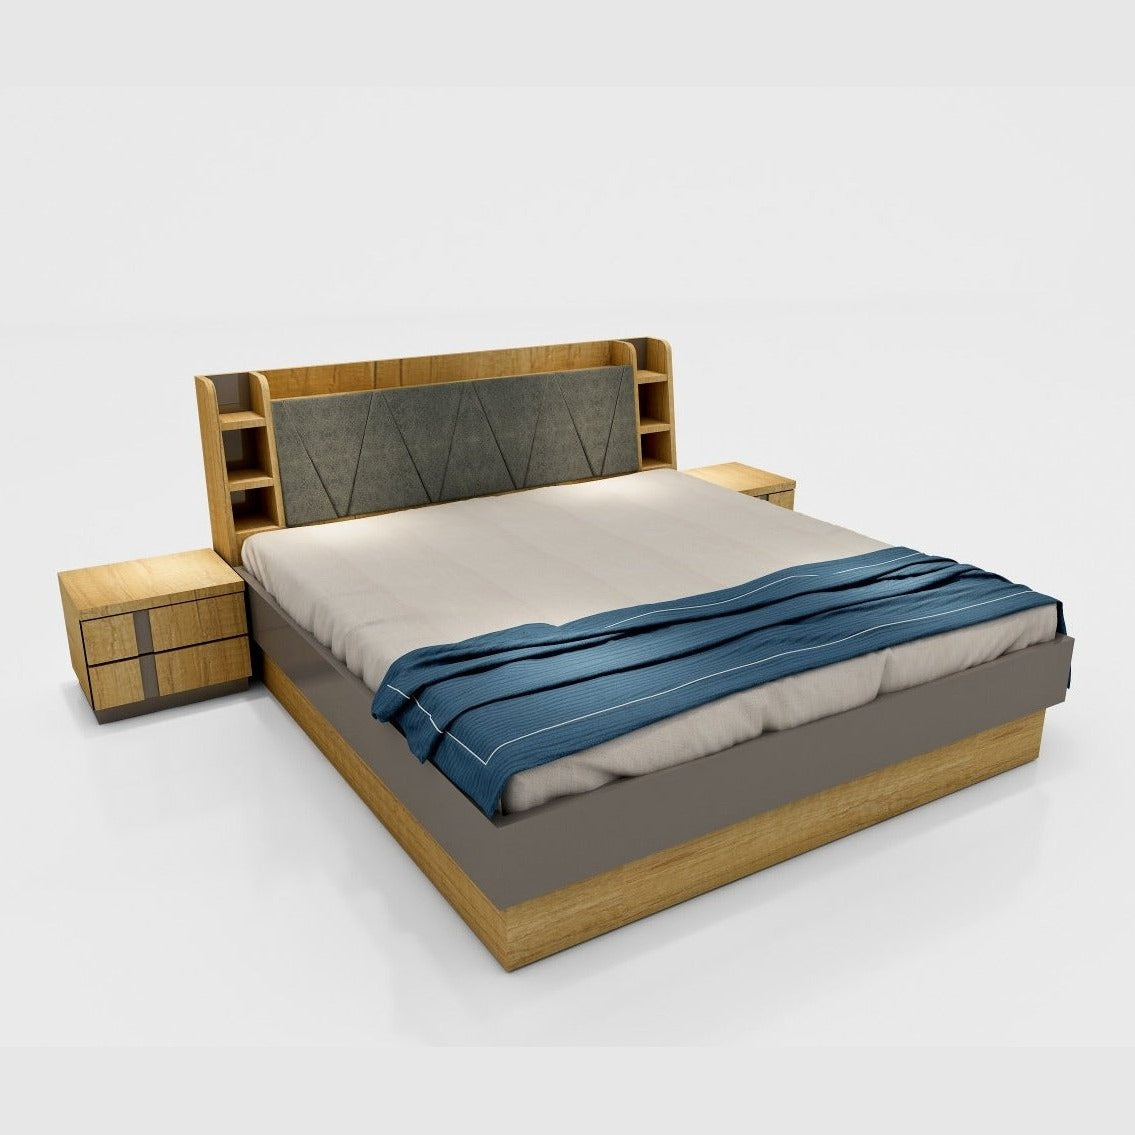 UW-2715, BRISTOL DOUBLE BED Mobel Furniture